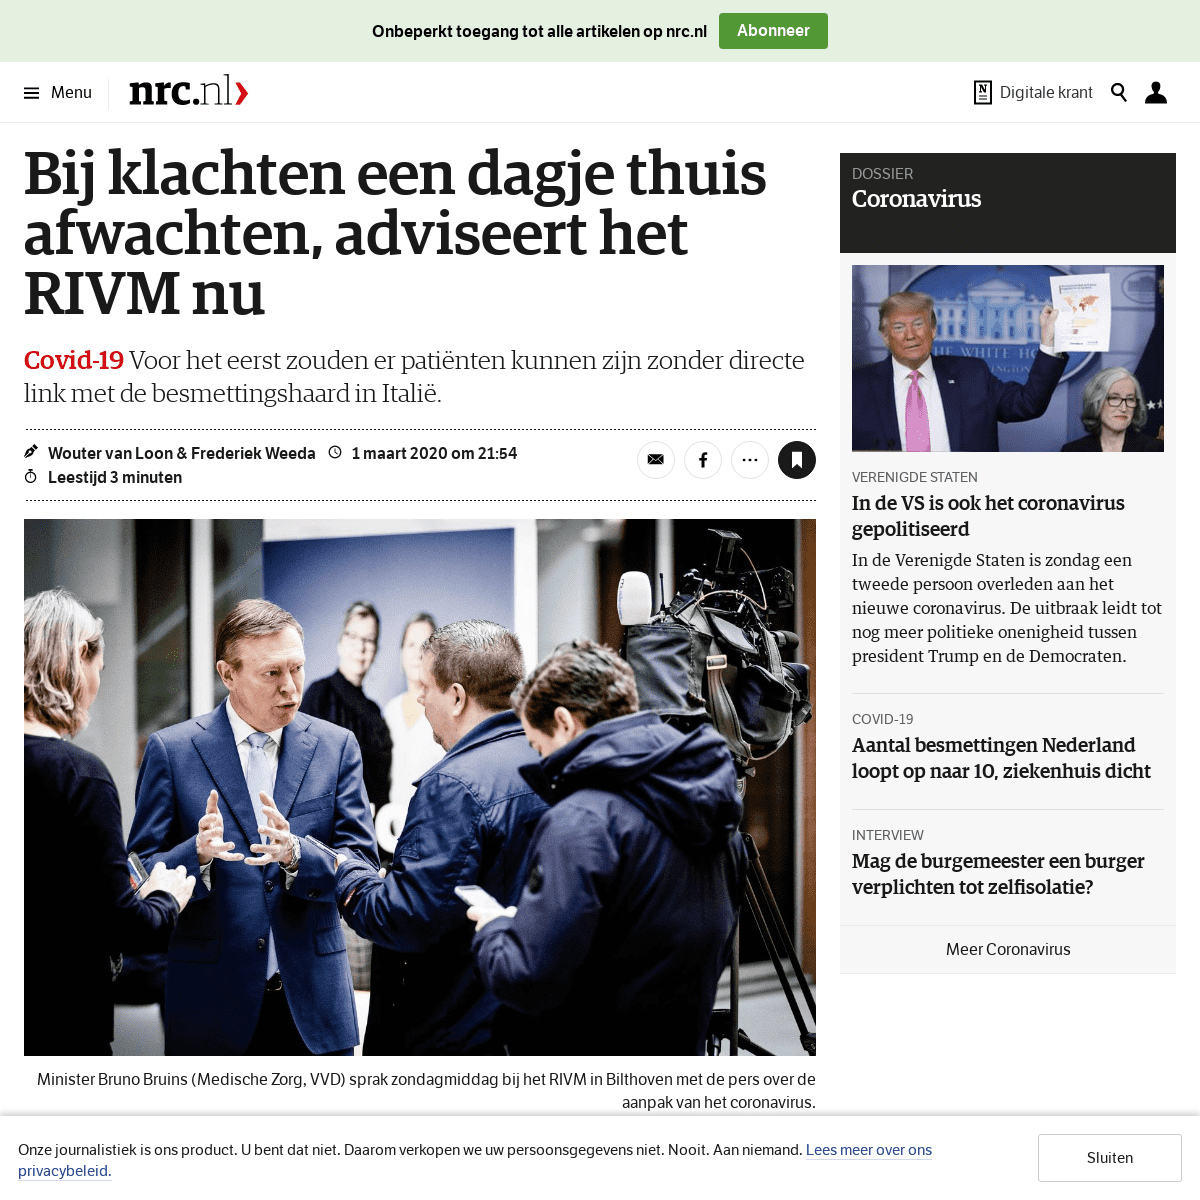 A complete backup of www.nrc.nl/nieuws/2020/03/01/bij-klachten-een-dagje-thuis-afwachten-adviseert-het-rivm-nu-a3992276